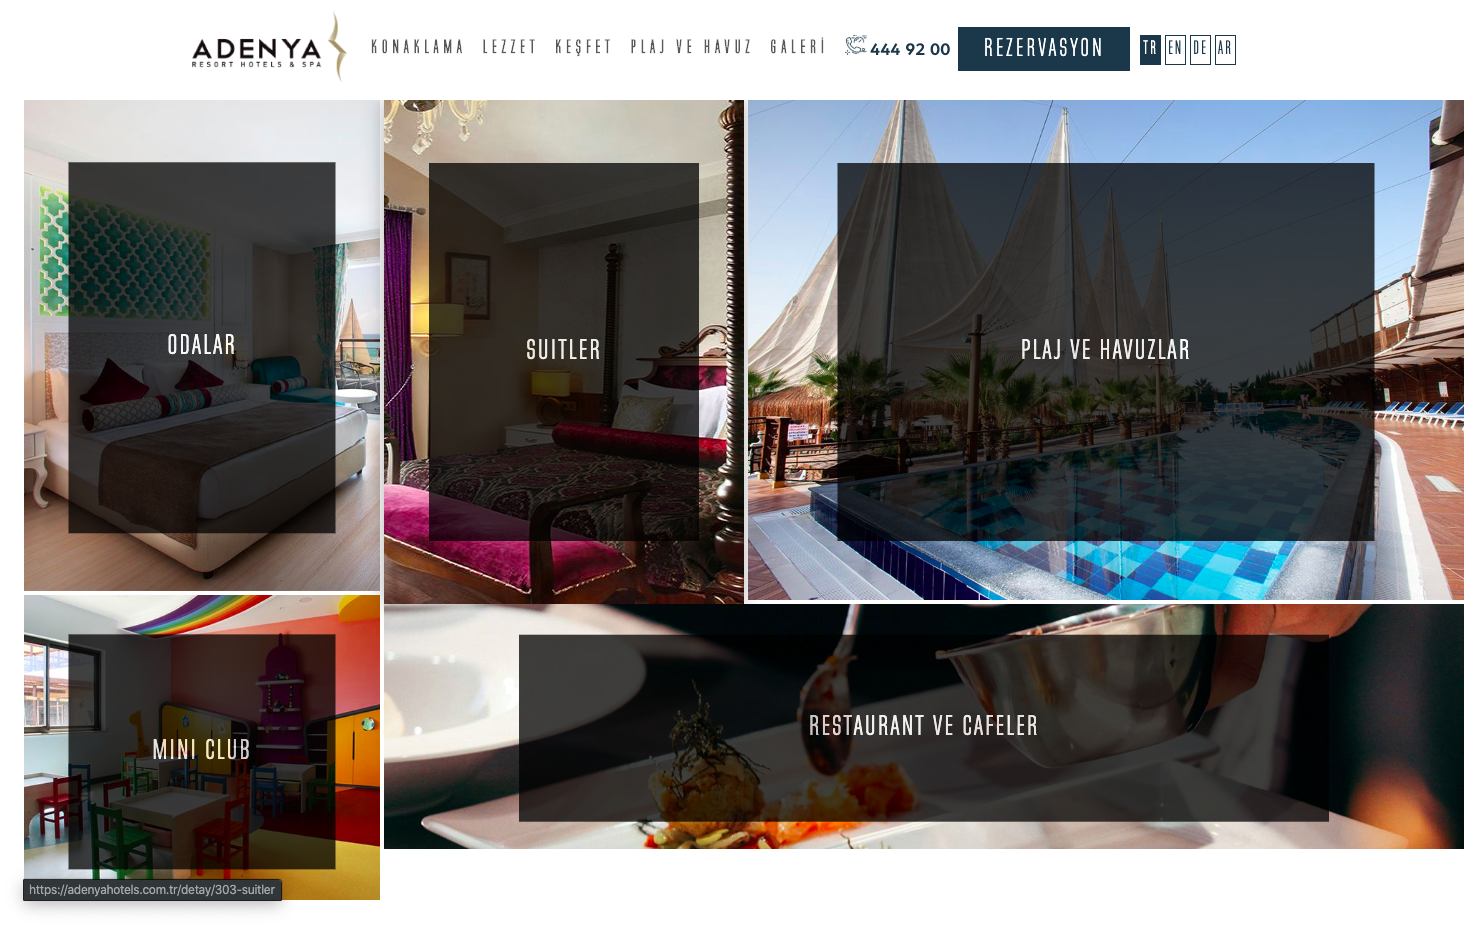 Adenya Hotels